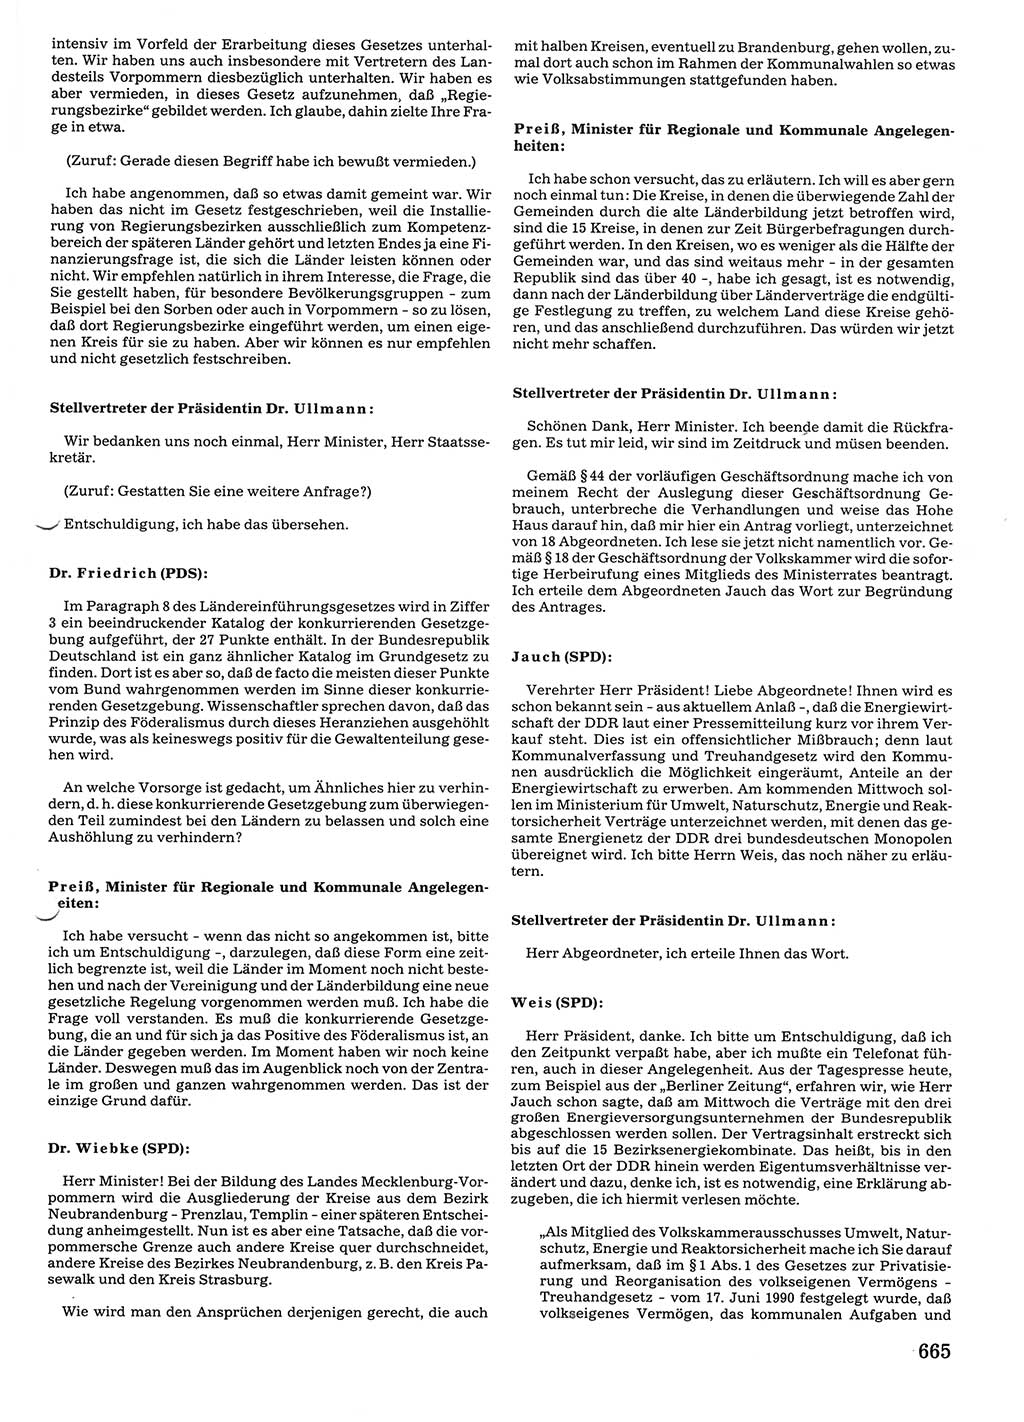 Tagungen der Volkskammer (VK) der Deutschen Demokratischen Republik (DDR), 10. Wahlperiode 1990, Seite 665 (VK. DDR 10. WP. 1990, Prot. Tg. 1-38, 5.4.-2.10.1990, S. 665)